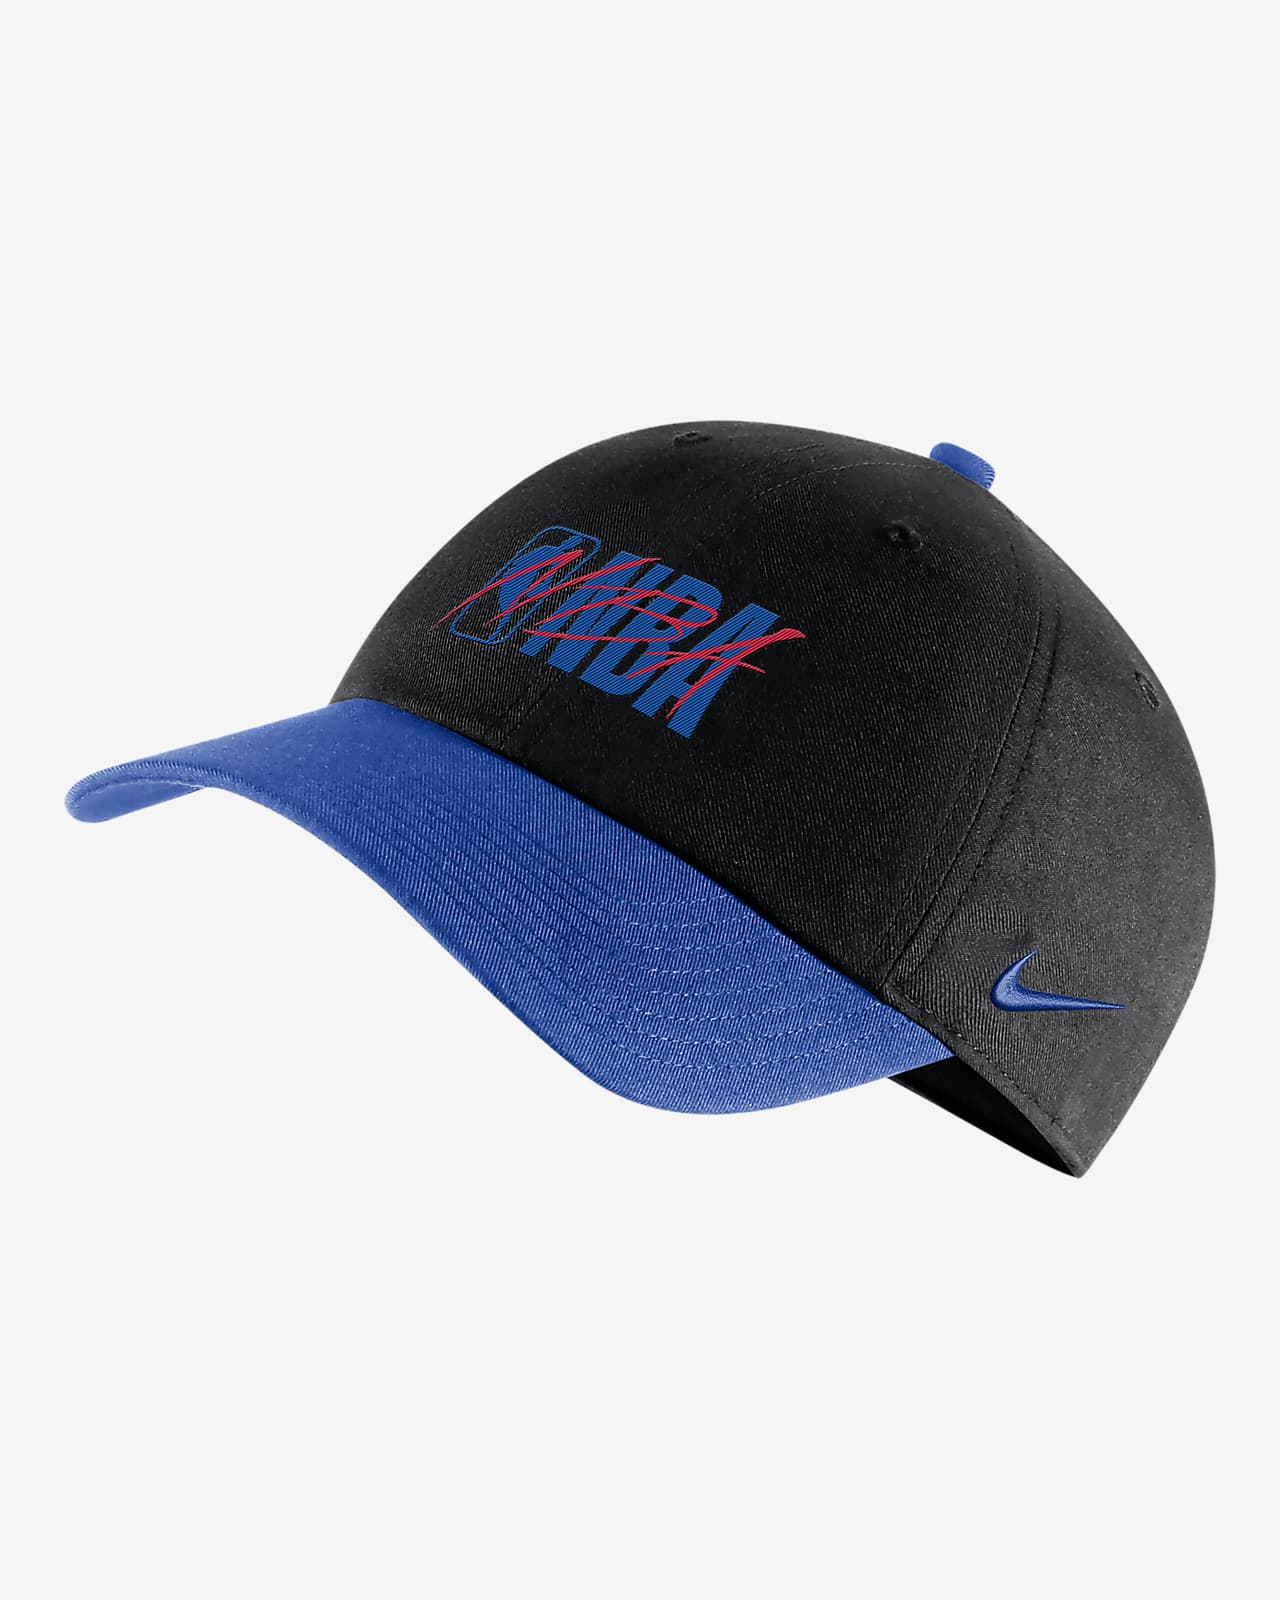 Team 31 Heritage86 Nike NBA Adjustable Hat